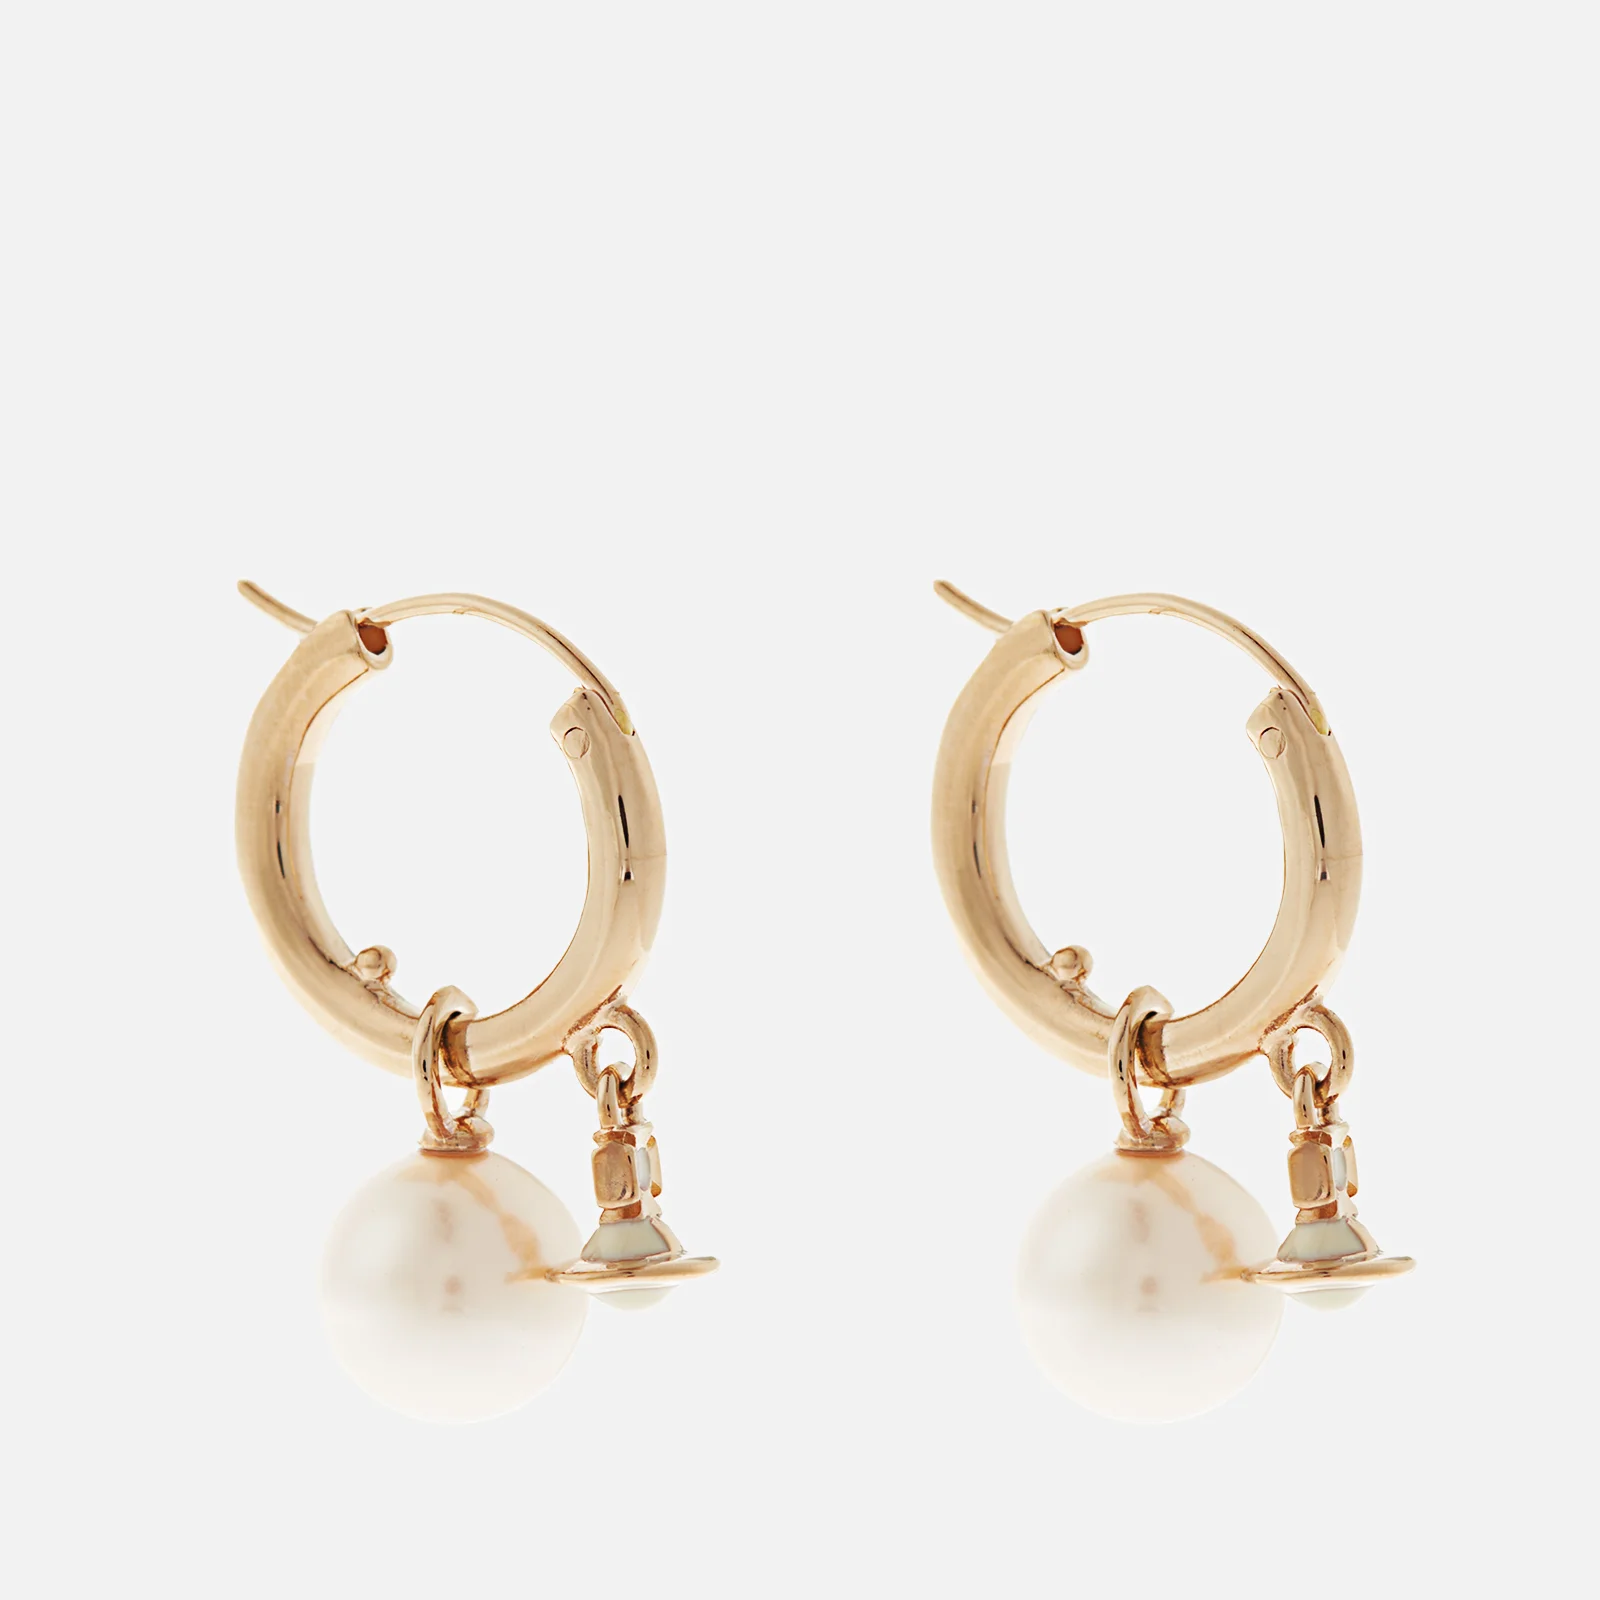 Vivienne Westwood Fenella Gold-Tone, Faux Pearl and Enamel Hoop Earrings Image 1